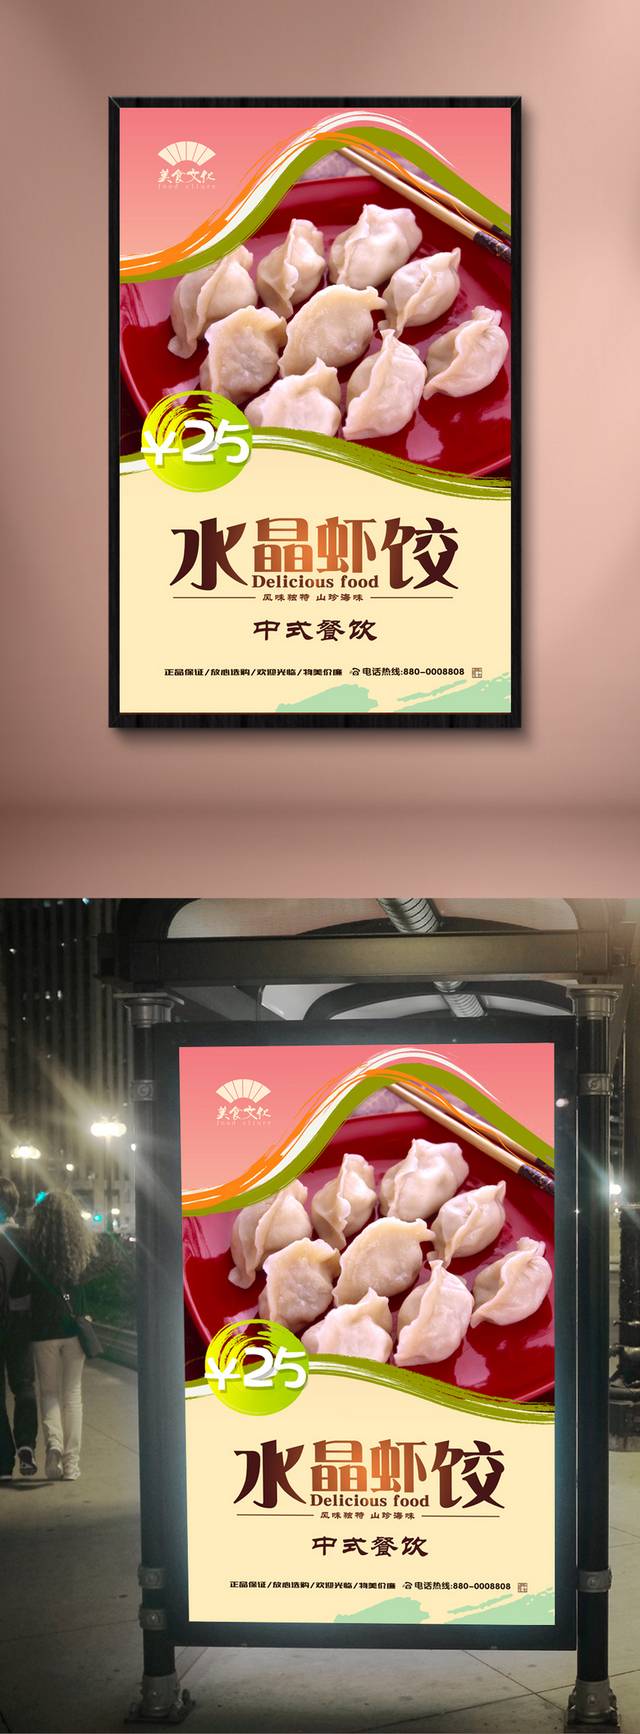 水晶虾饺宣传海报设计